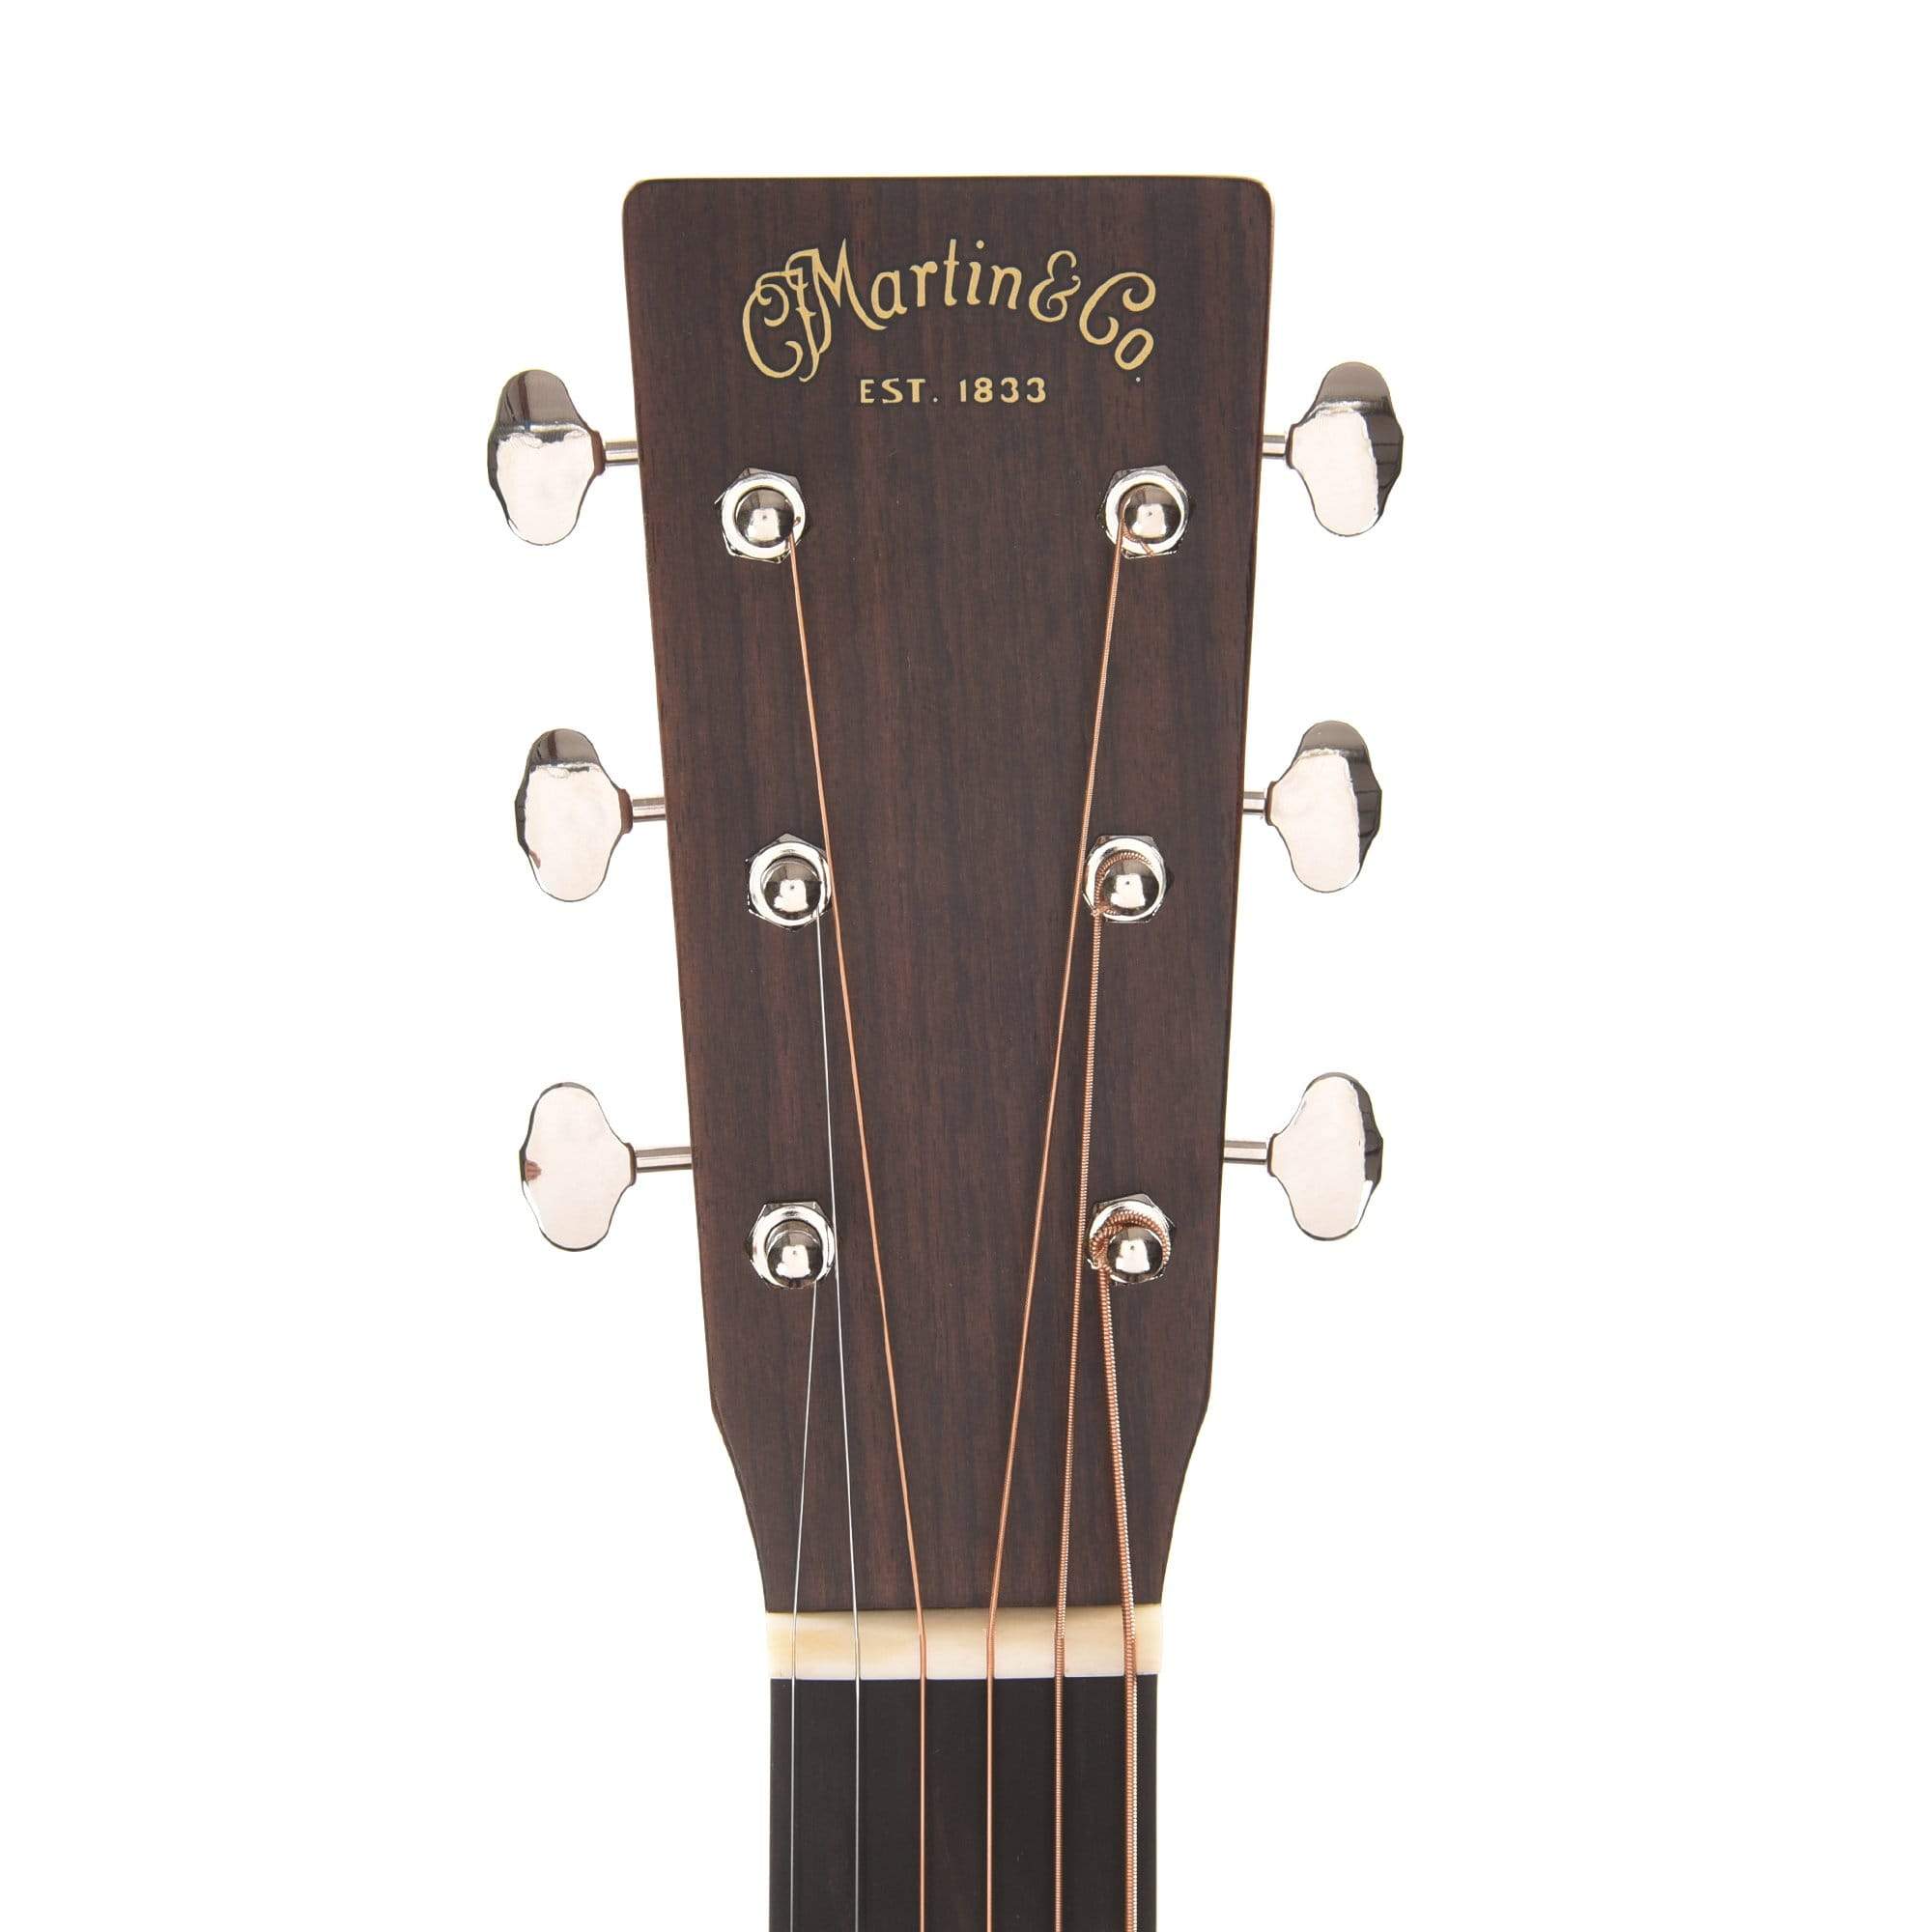 Martin D16EL Sitka Spruce/Rosewood w/Pickup LEFTY Acoustic Guitars / Left-Handed